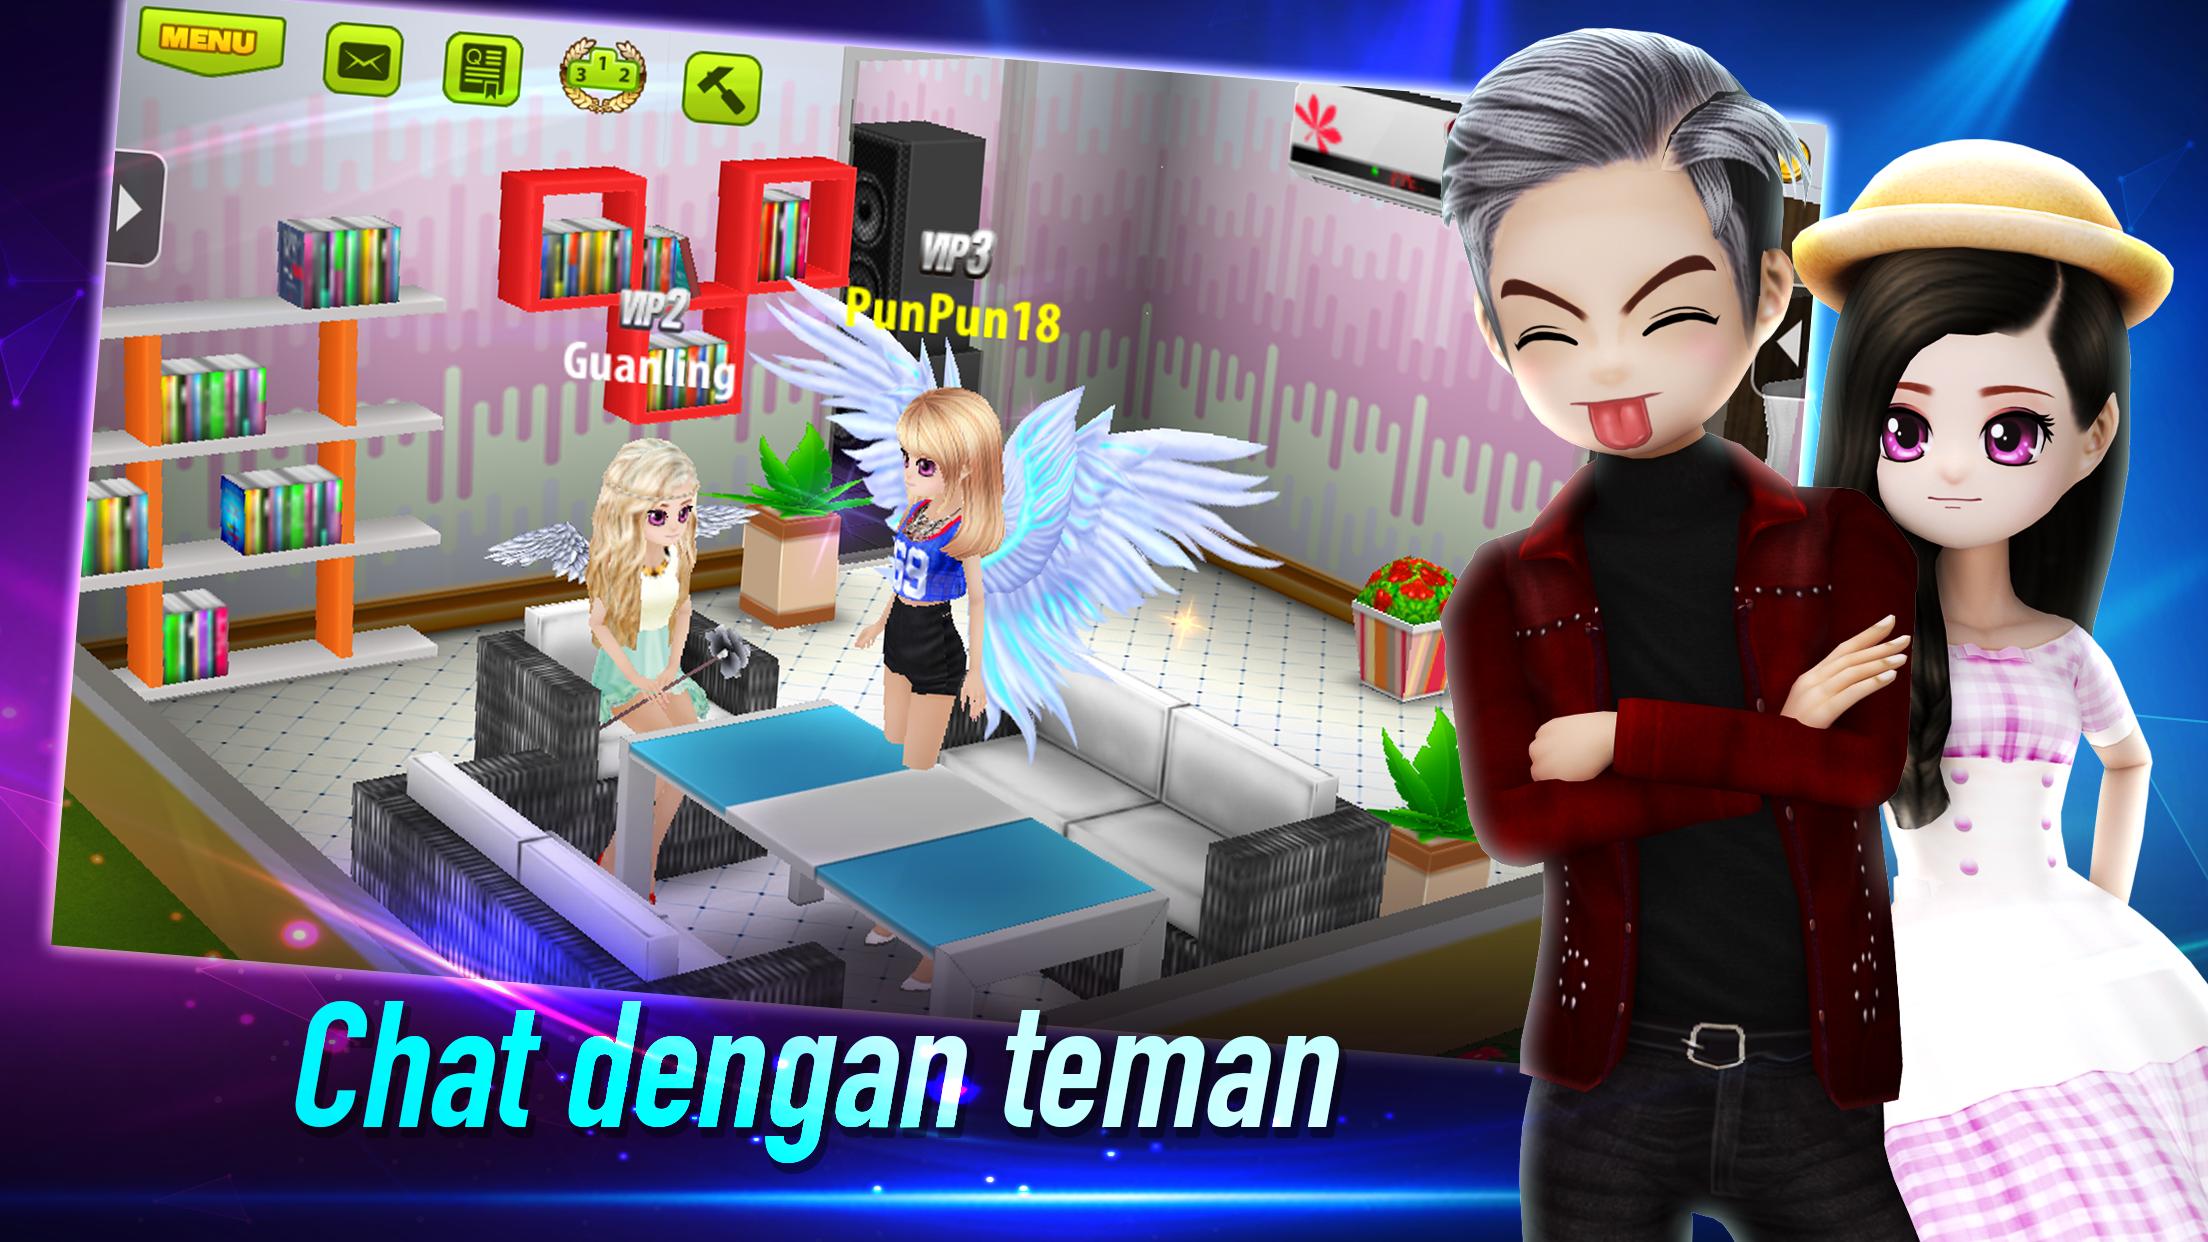 AVATAR MUSIK INDONESIA - Social Dancing Game 1.0.1 Screenshot 14